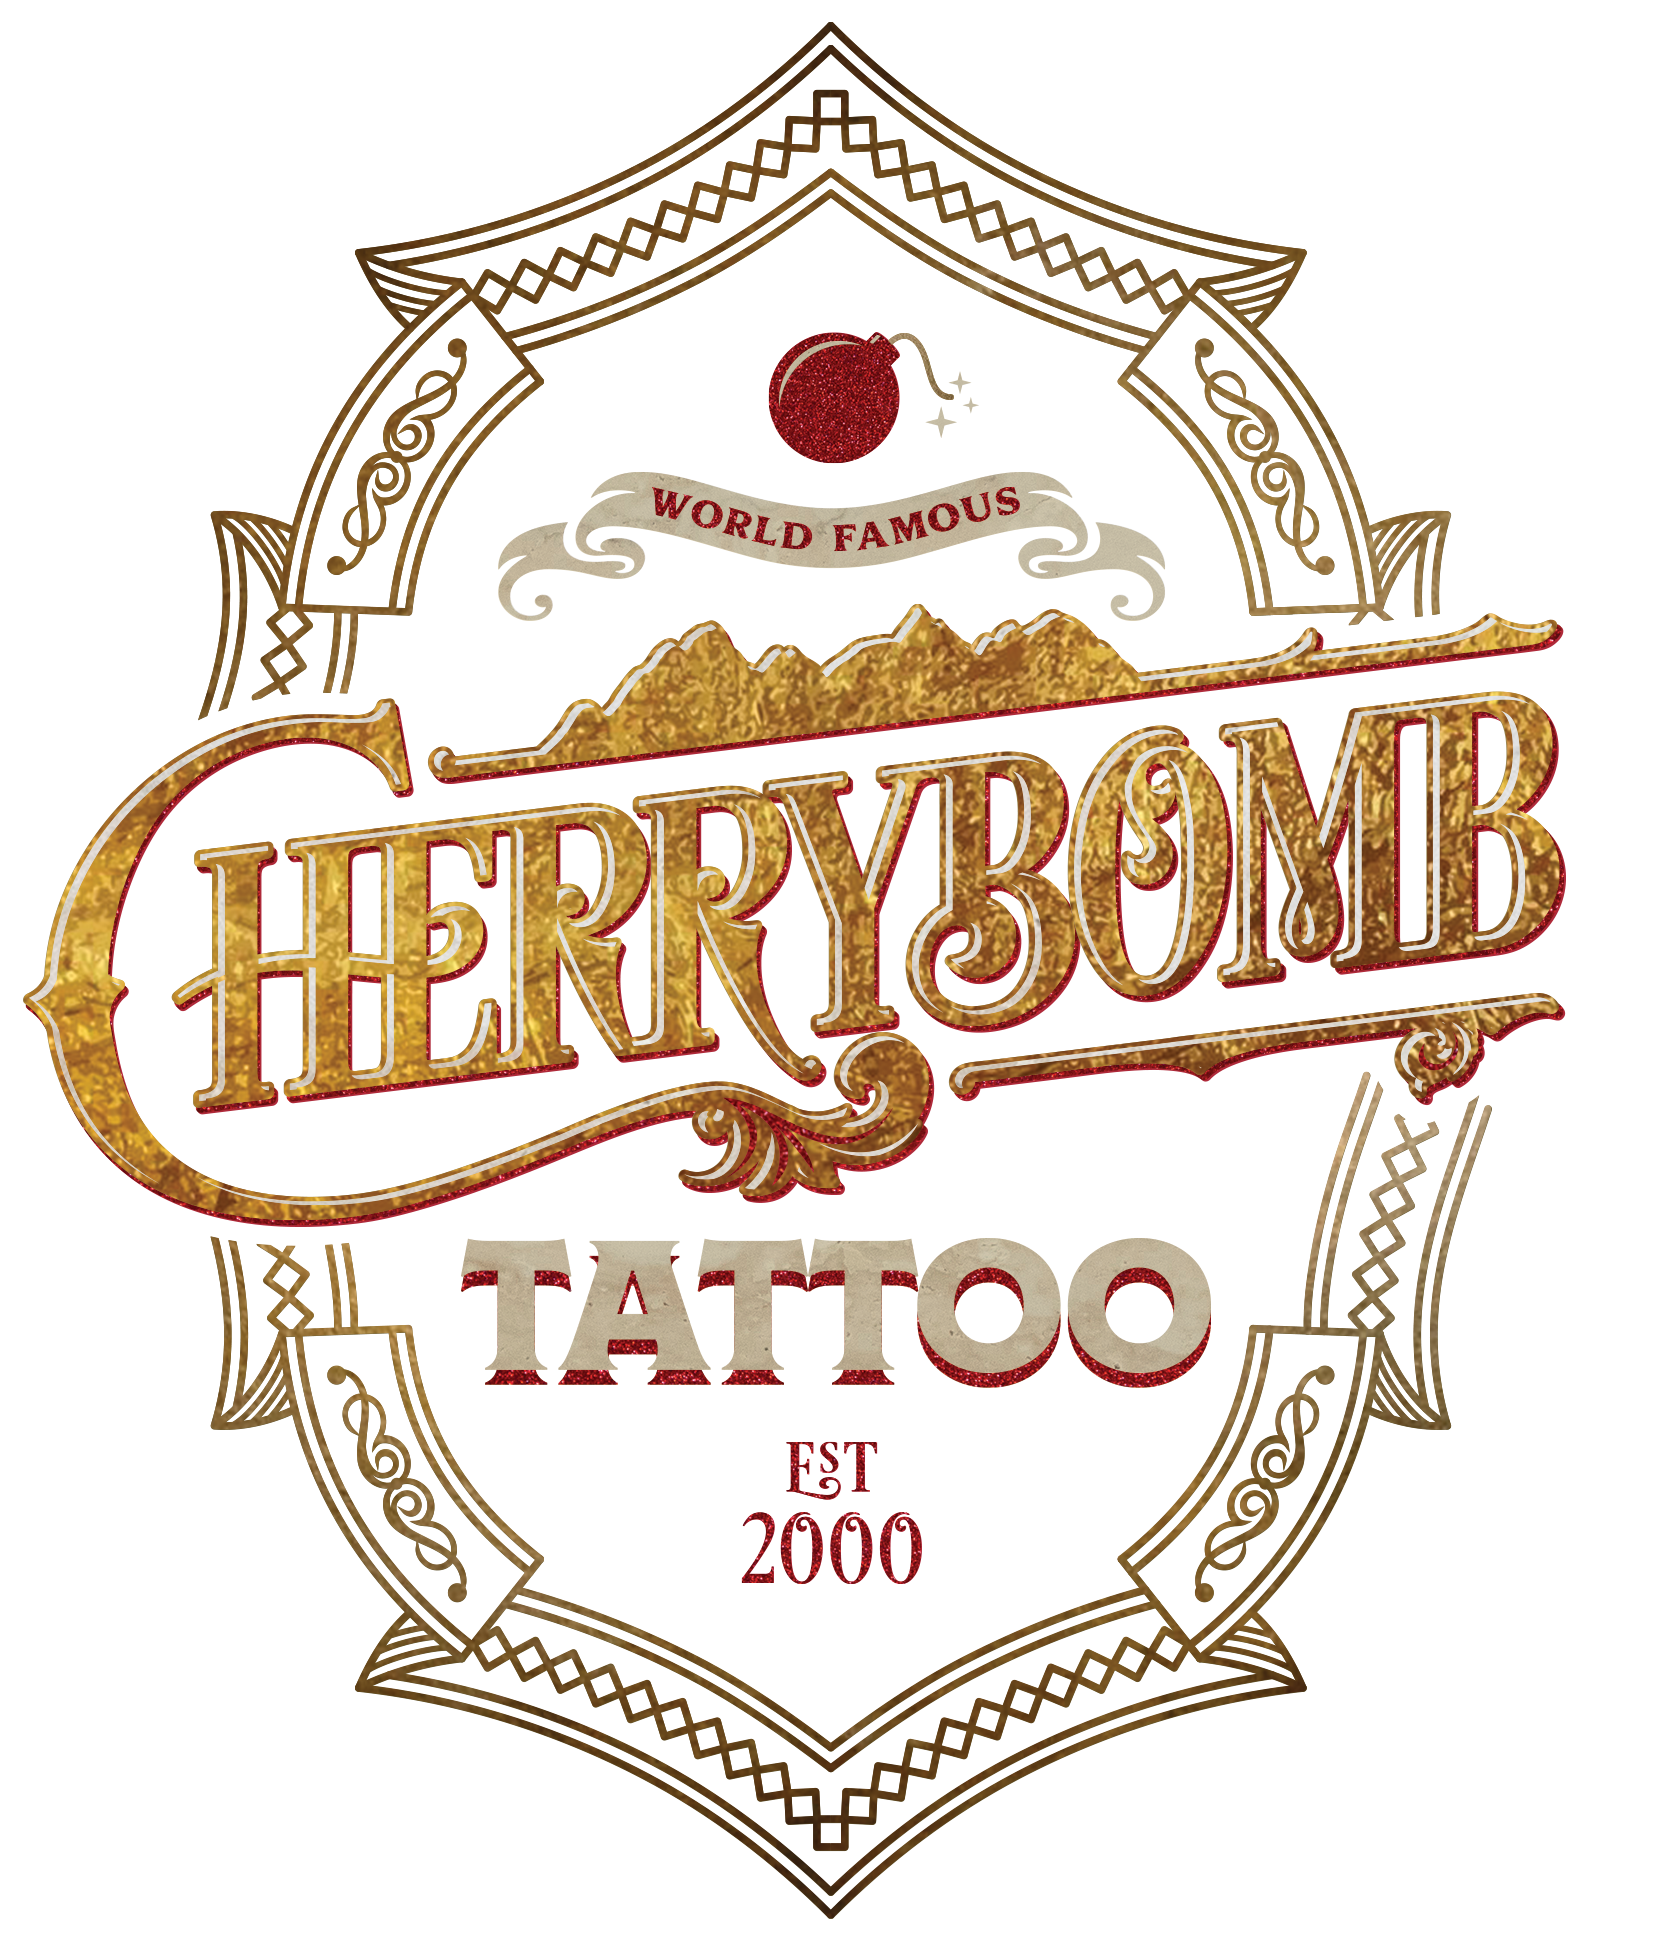 CHERRYBOMB Tattoo & Body Piercing